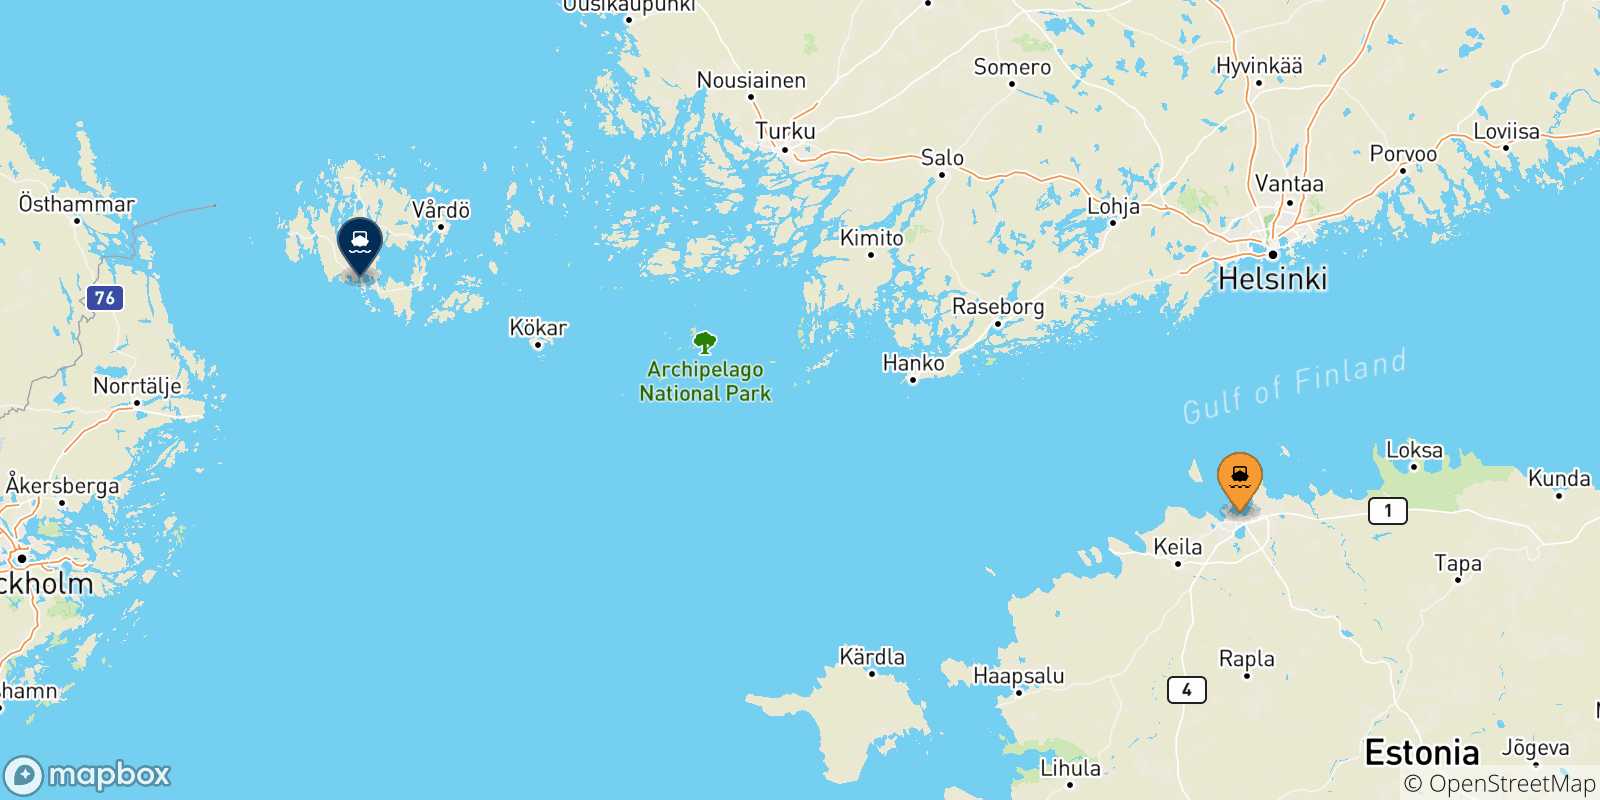 Mappa delle possibili rotte tra l'Estonia e le Isole Aland